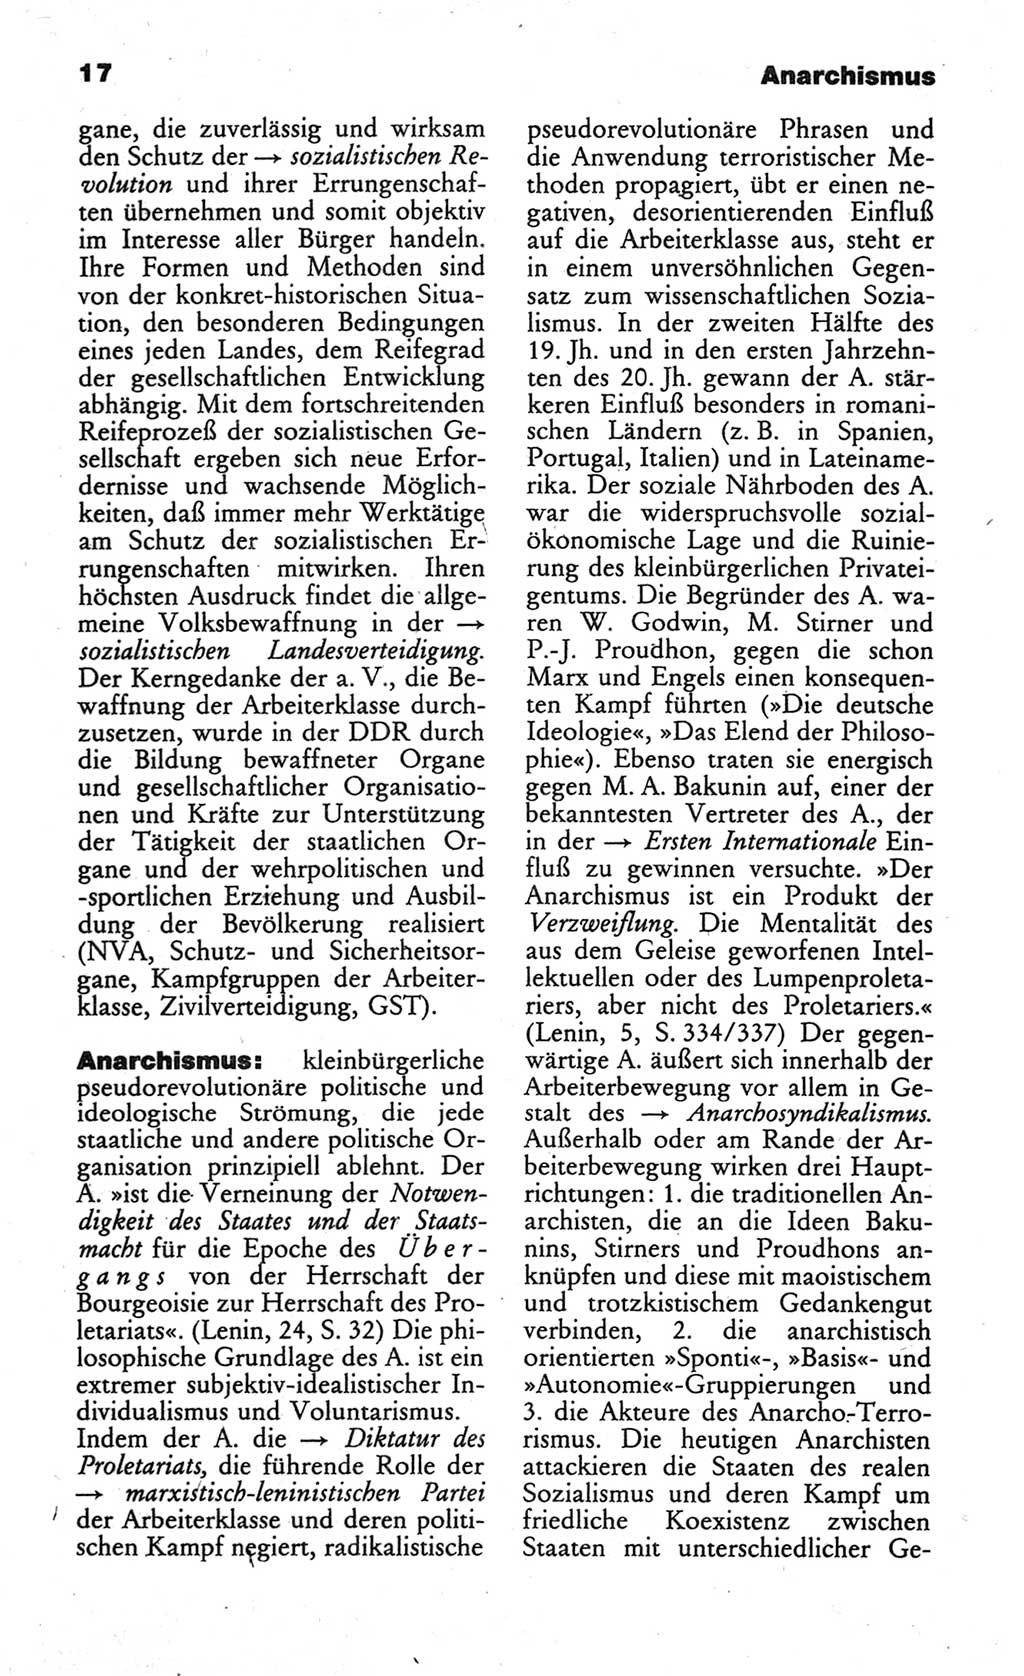 Wörterbuch des wissenschaftlichen Kommunismus [Deutsche Demokratische Republik (DDR)] 1984, Seite 17 (Wb. wiss. Komm. DDR 1984, S. 17)